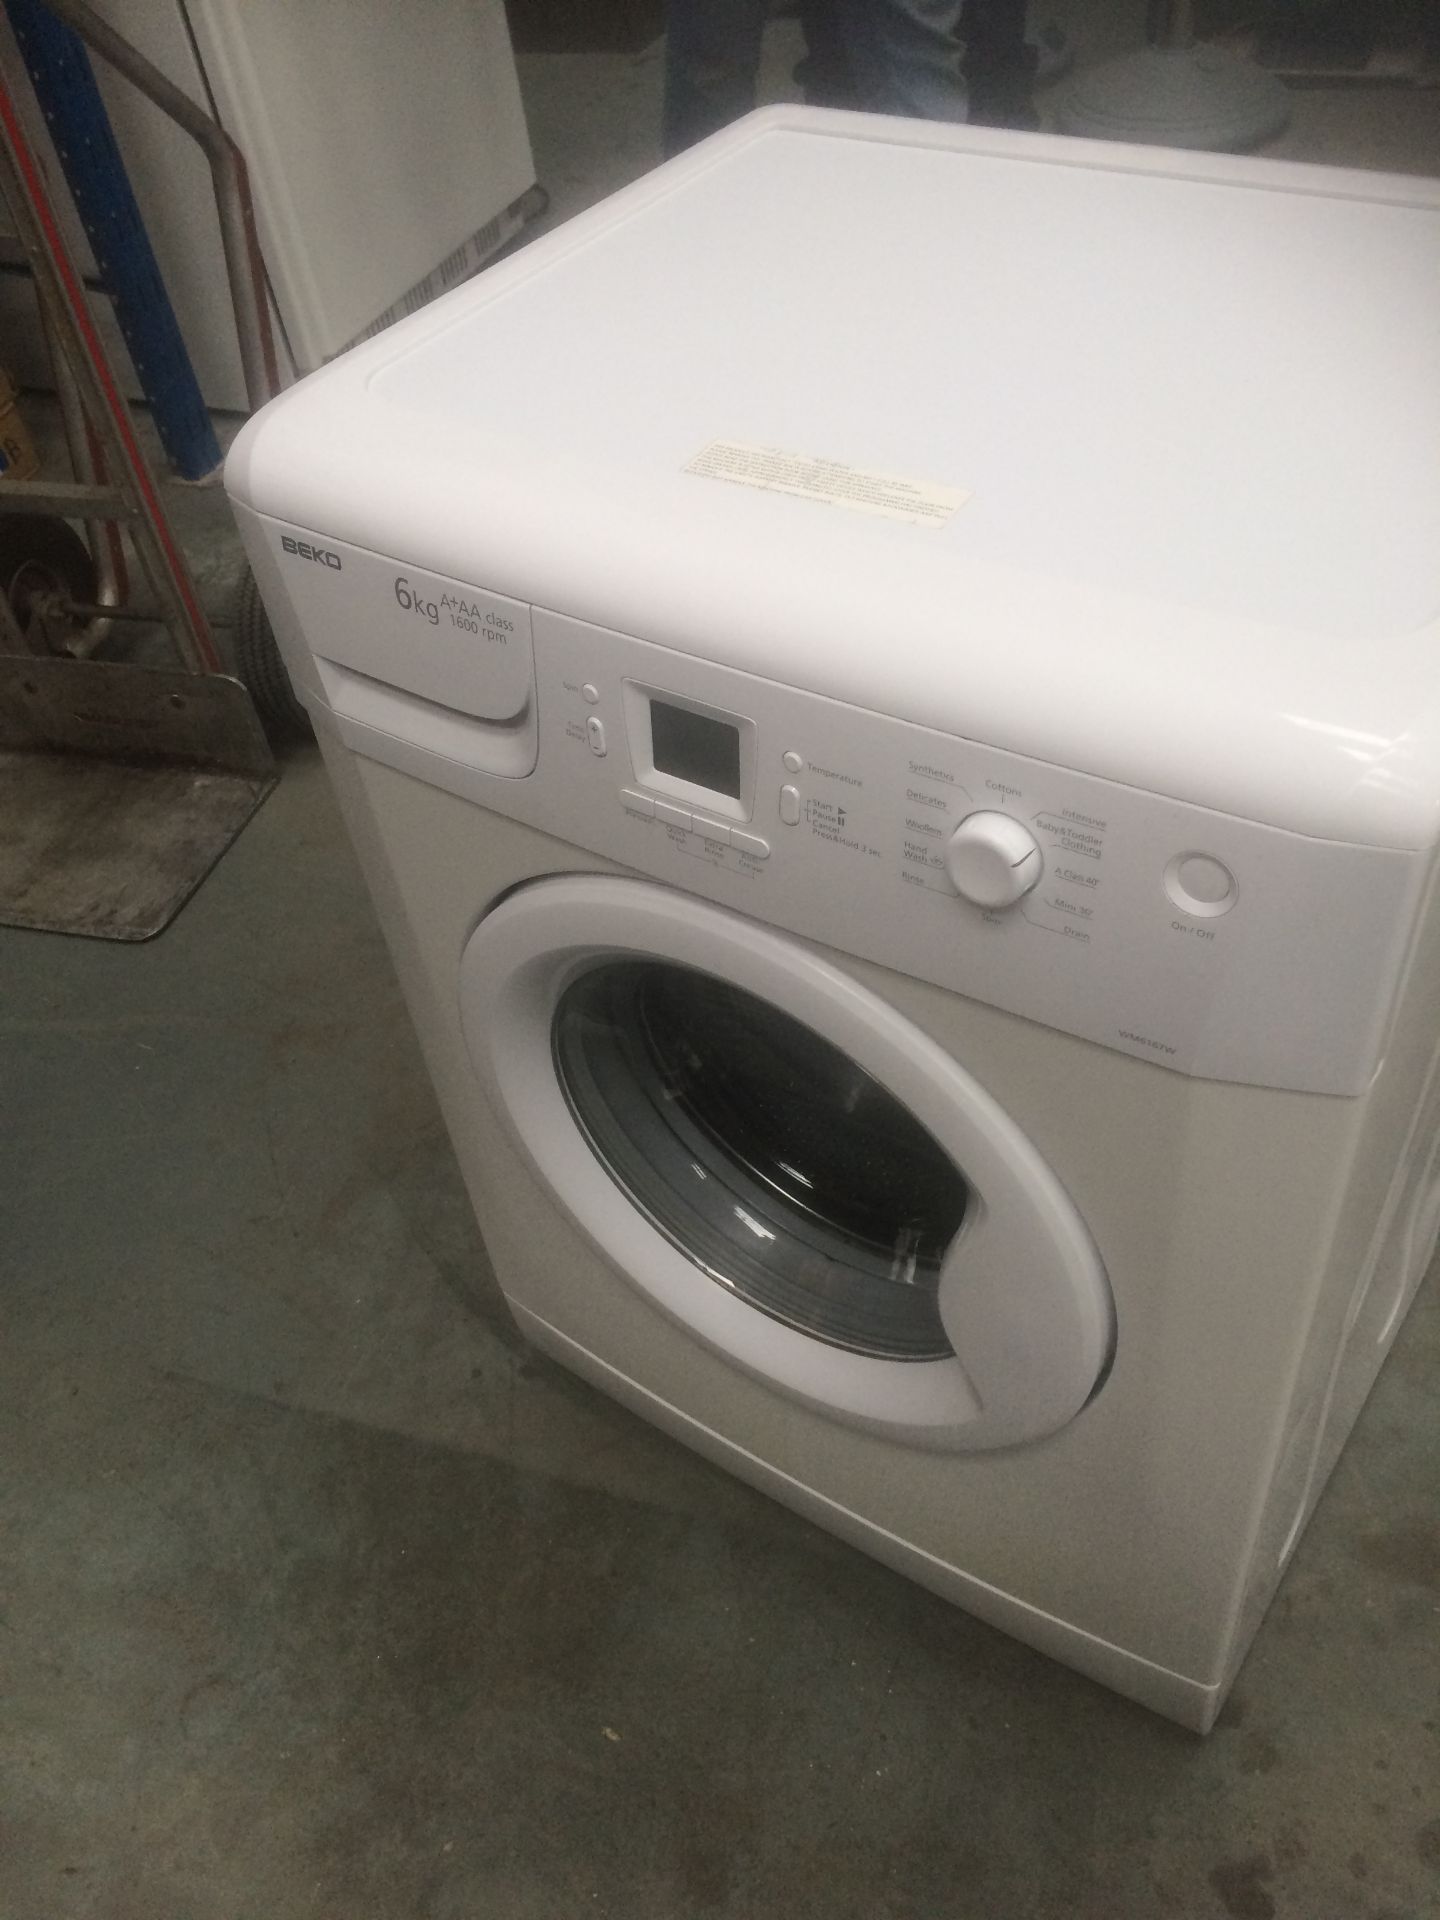 Beko Digital Washing Machine, - Image 3 of 5